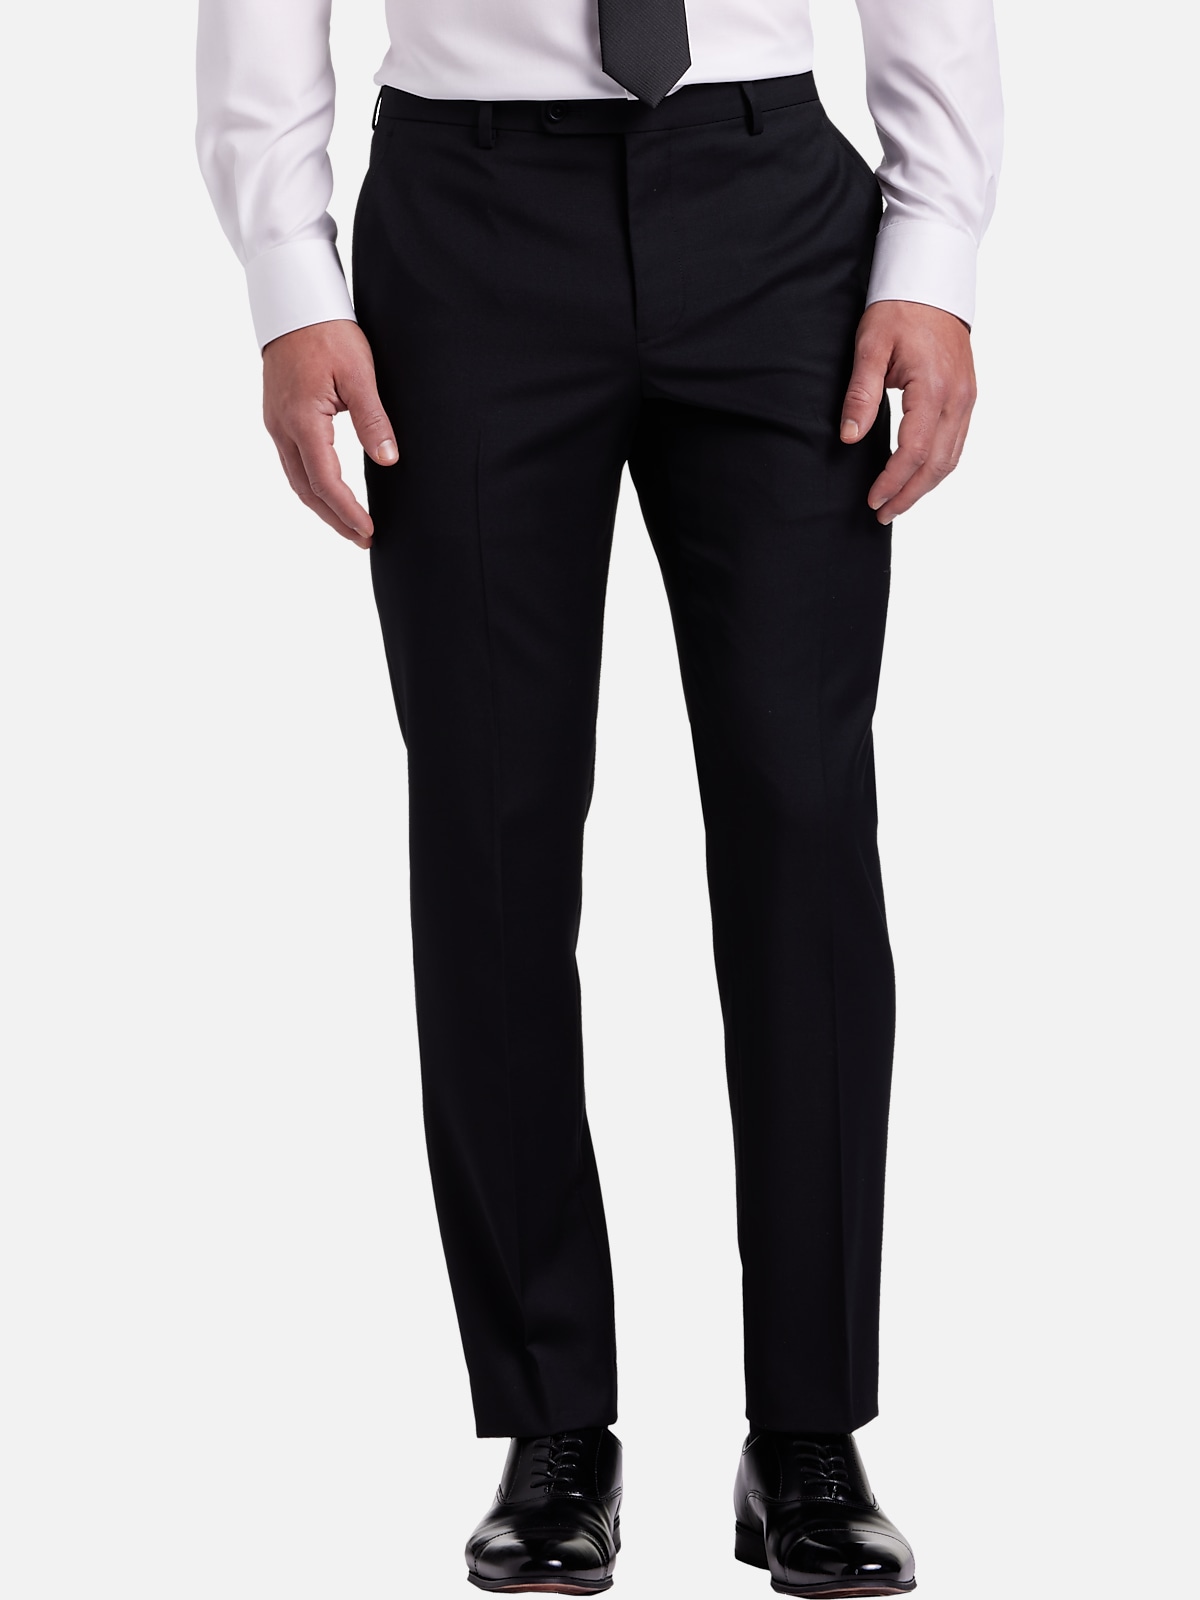 JOE Joseph Abboud Slim Fit Suit Separates Pants | All Clearance $39.99 ...